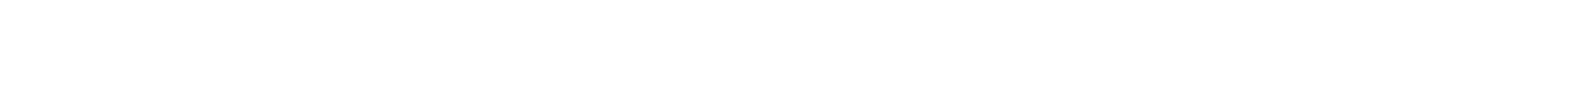 Logotipo de Armanext transparente